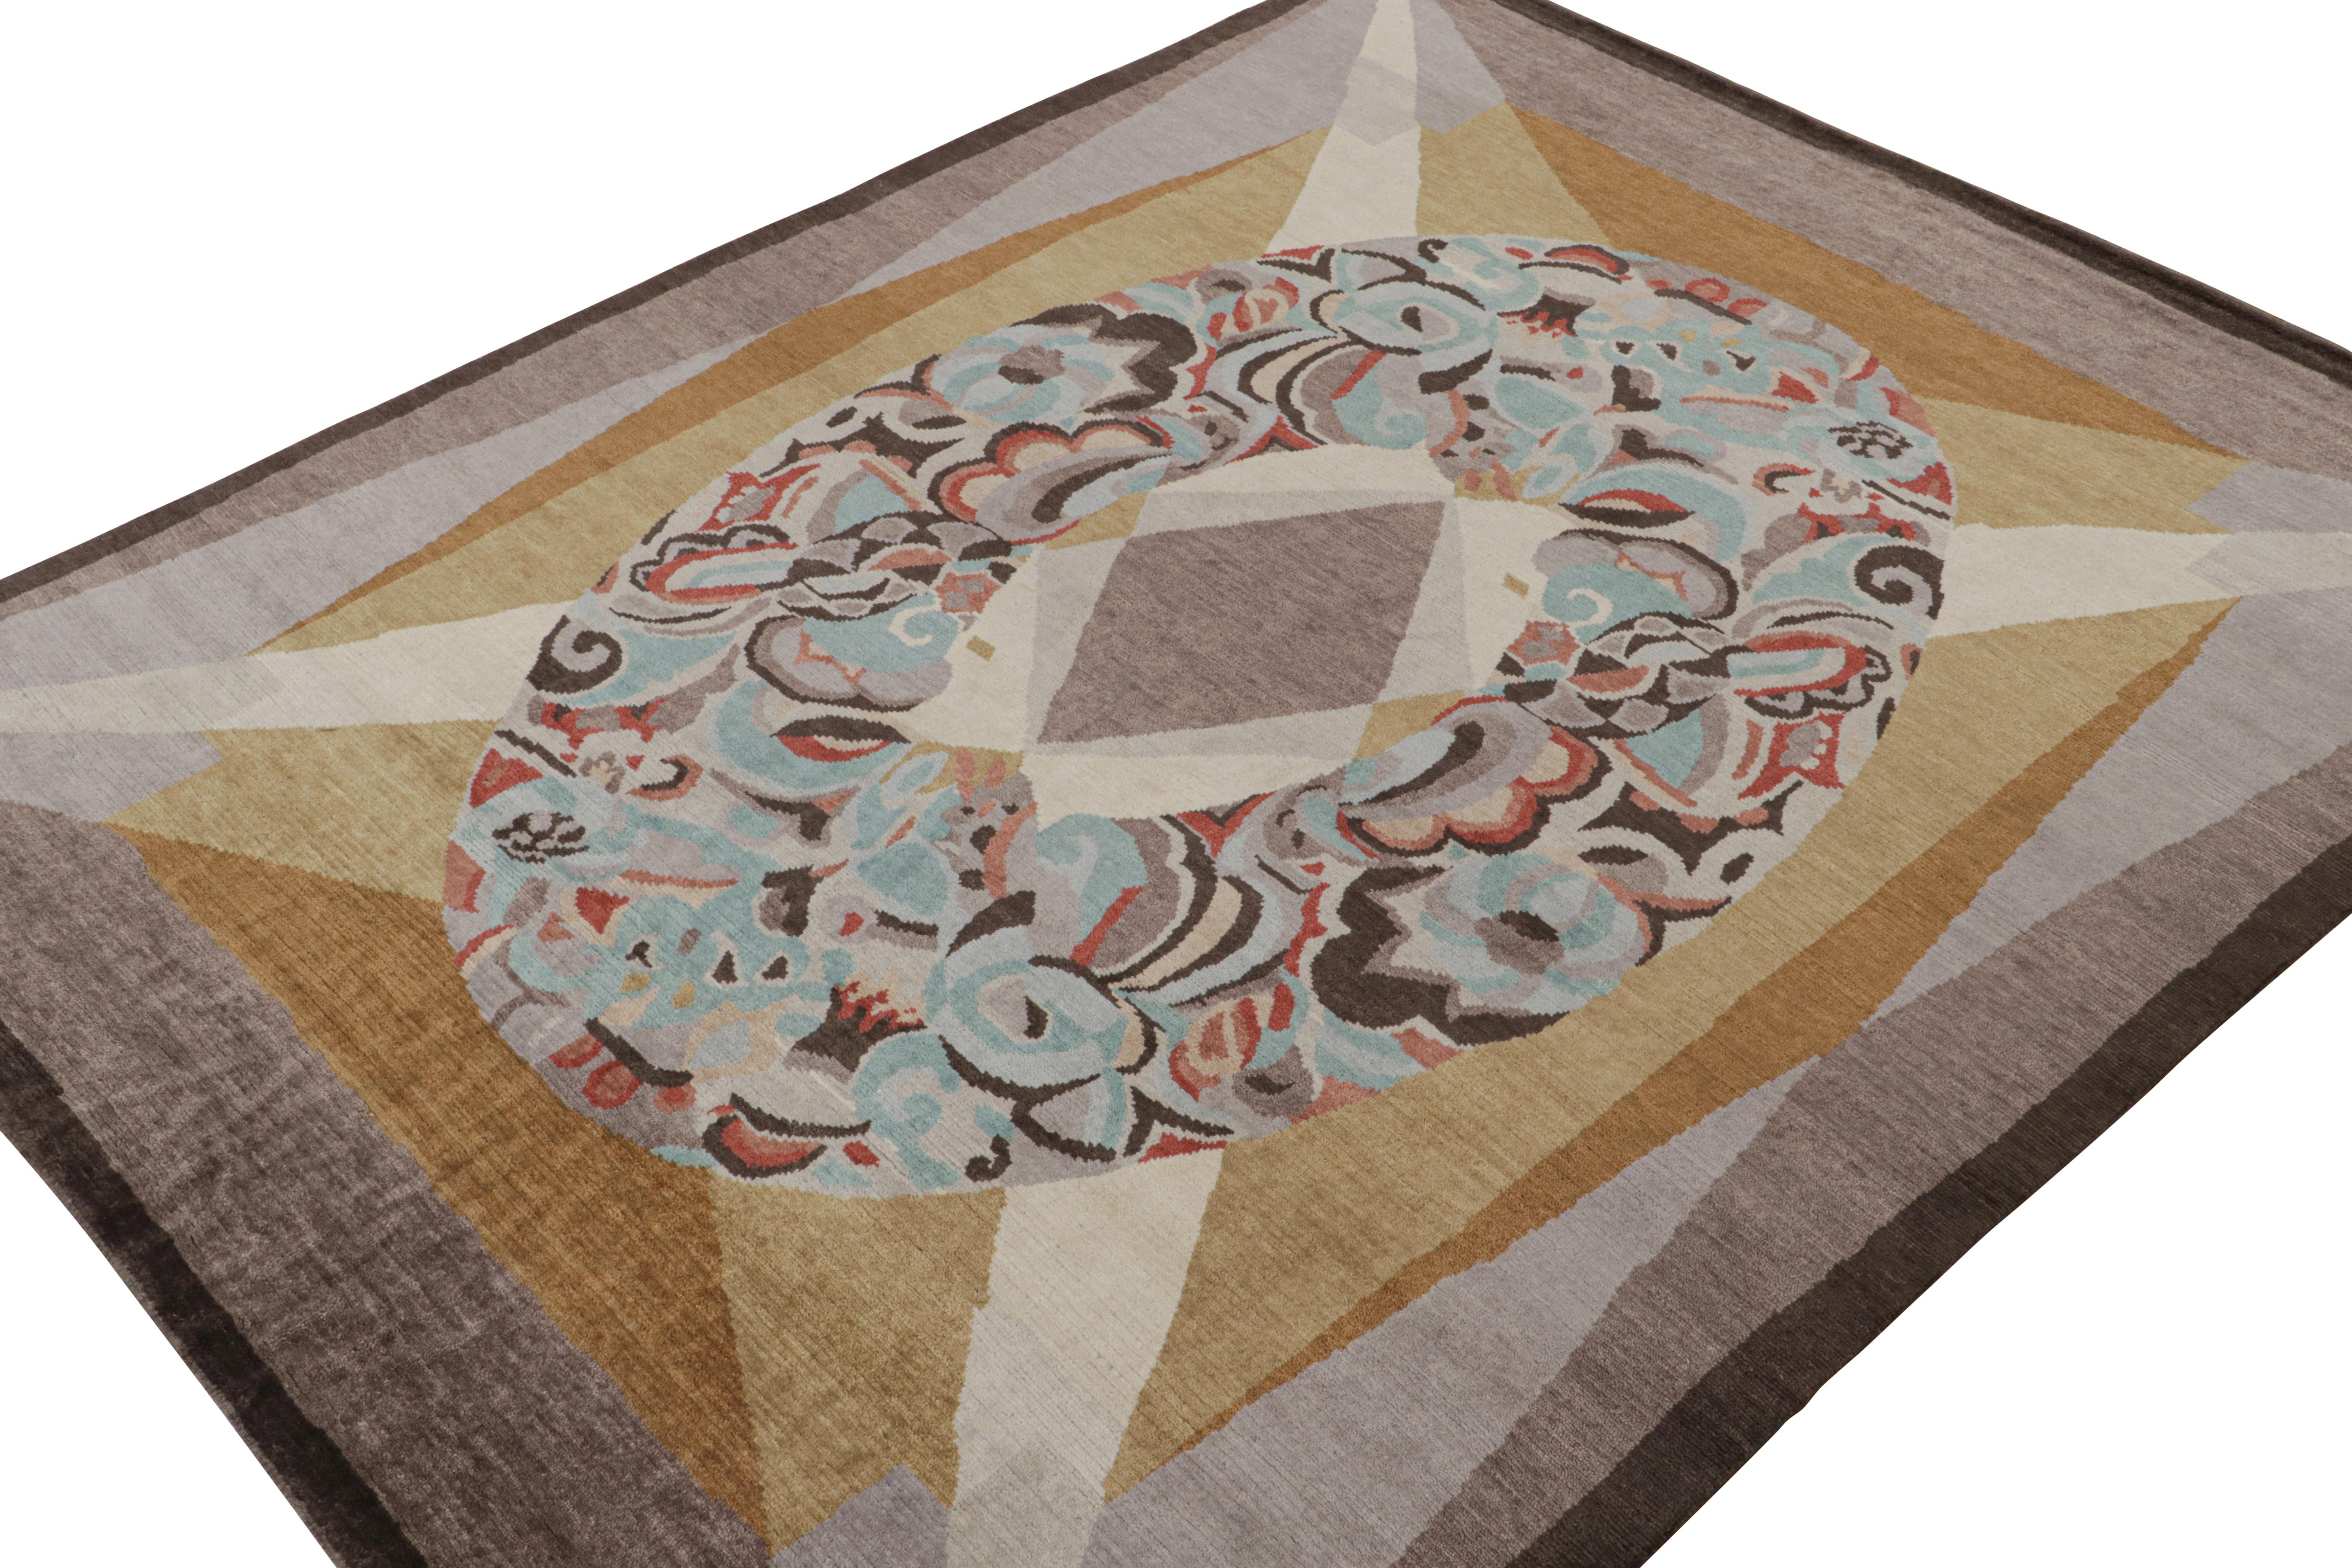 Noué à la main en laine, ce tapis moderne 9x12 fait partie de la collection de tapis Art déco français de Rug & Kilim.

Sur le design

Cette pièce s'inspire du style européen des années 1920 et présente un grand médaillon avec des motifs